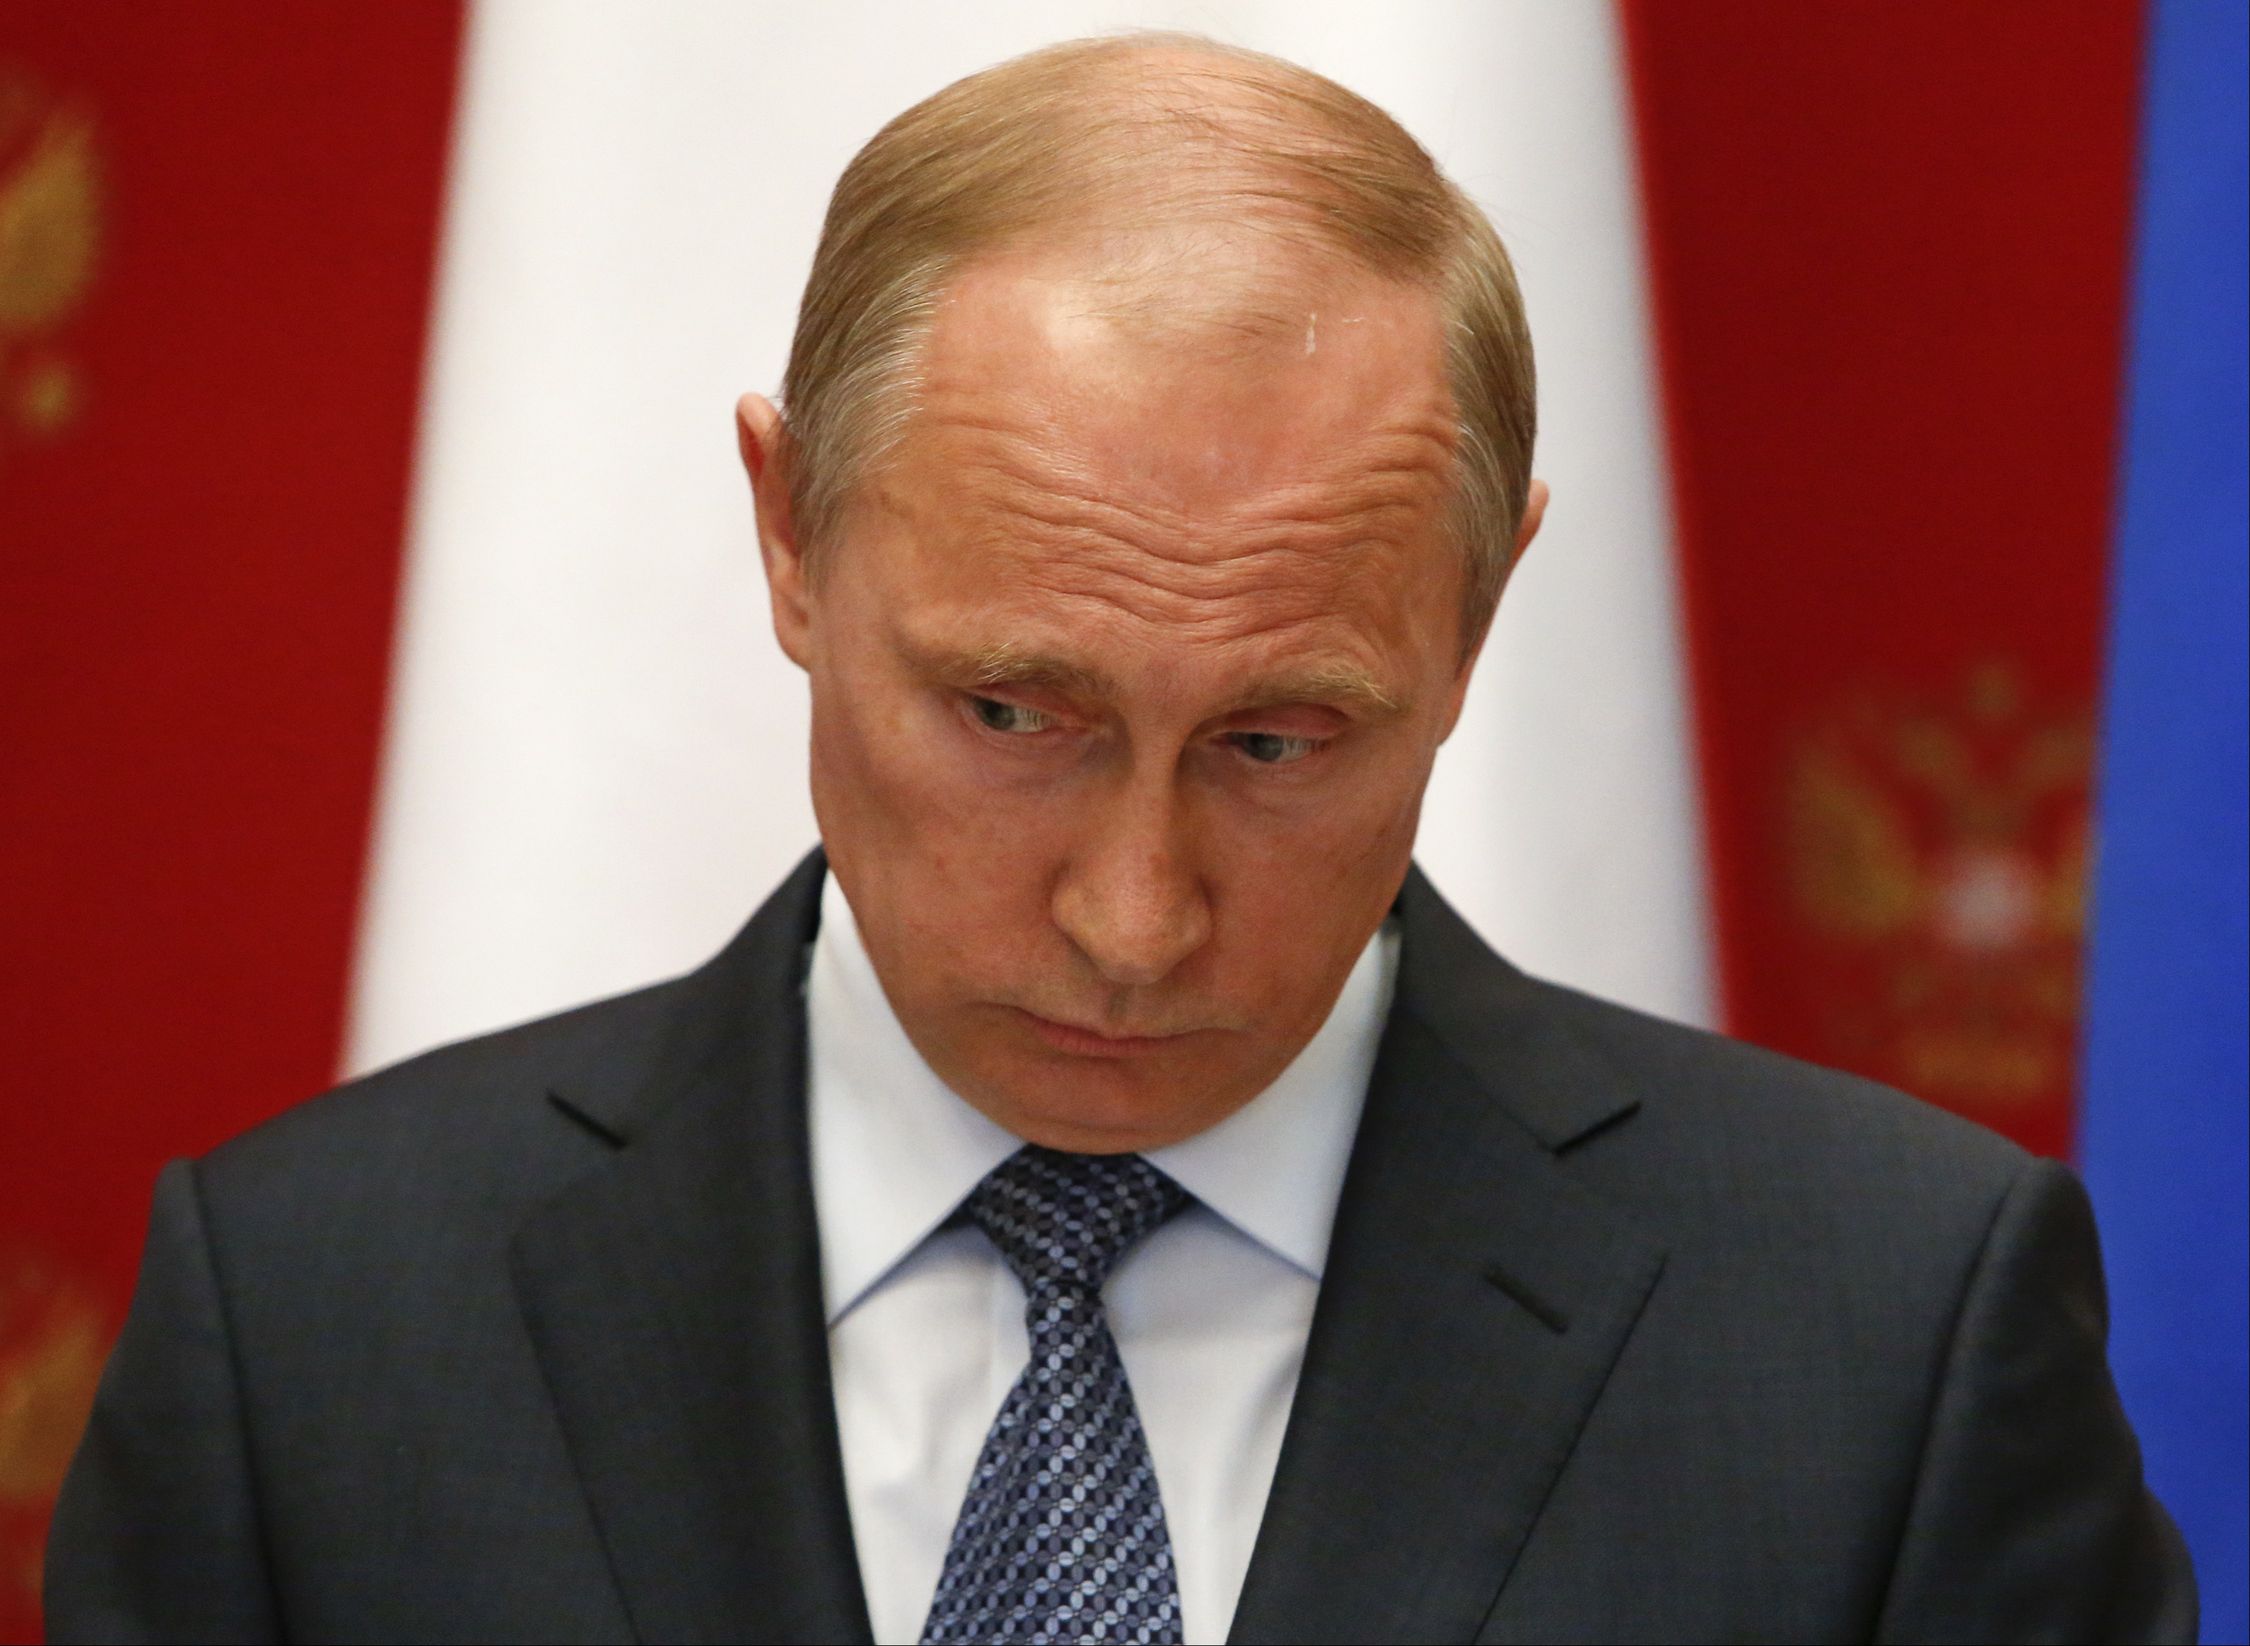 Путину готовят трибунал, от которого он не откупится, — российский политолог